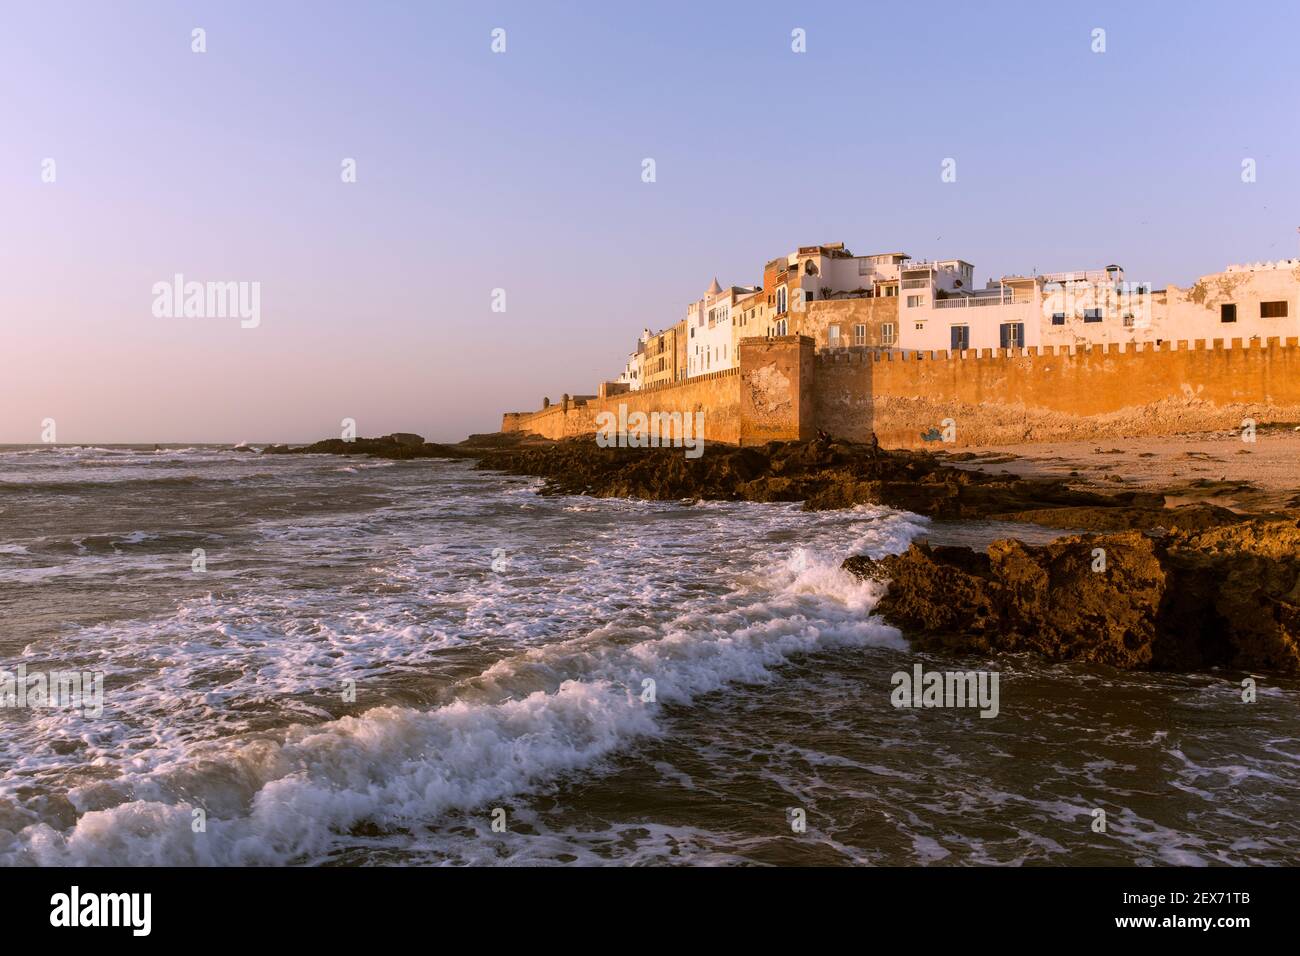 Maroc, Essaouira, Sqala du ville, fortifications protectrices sur le bord  de mer de la ville Photo Stock - Alamy